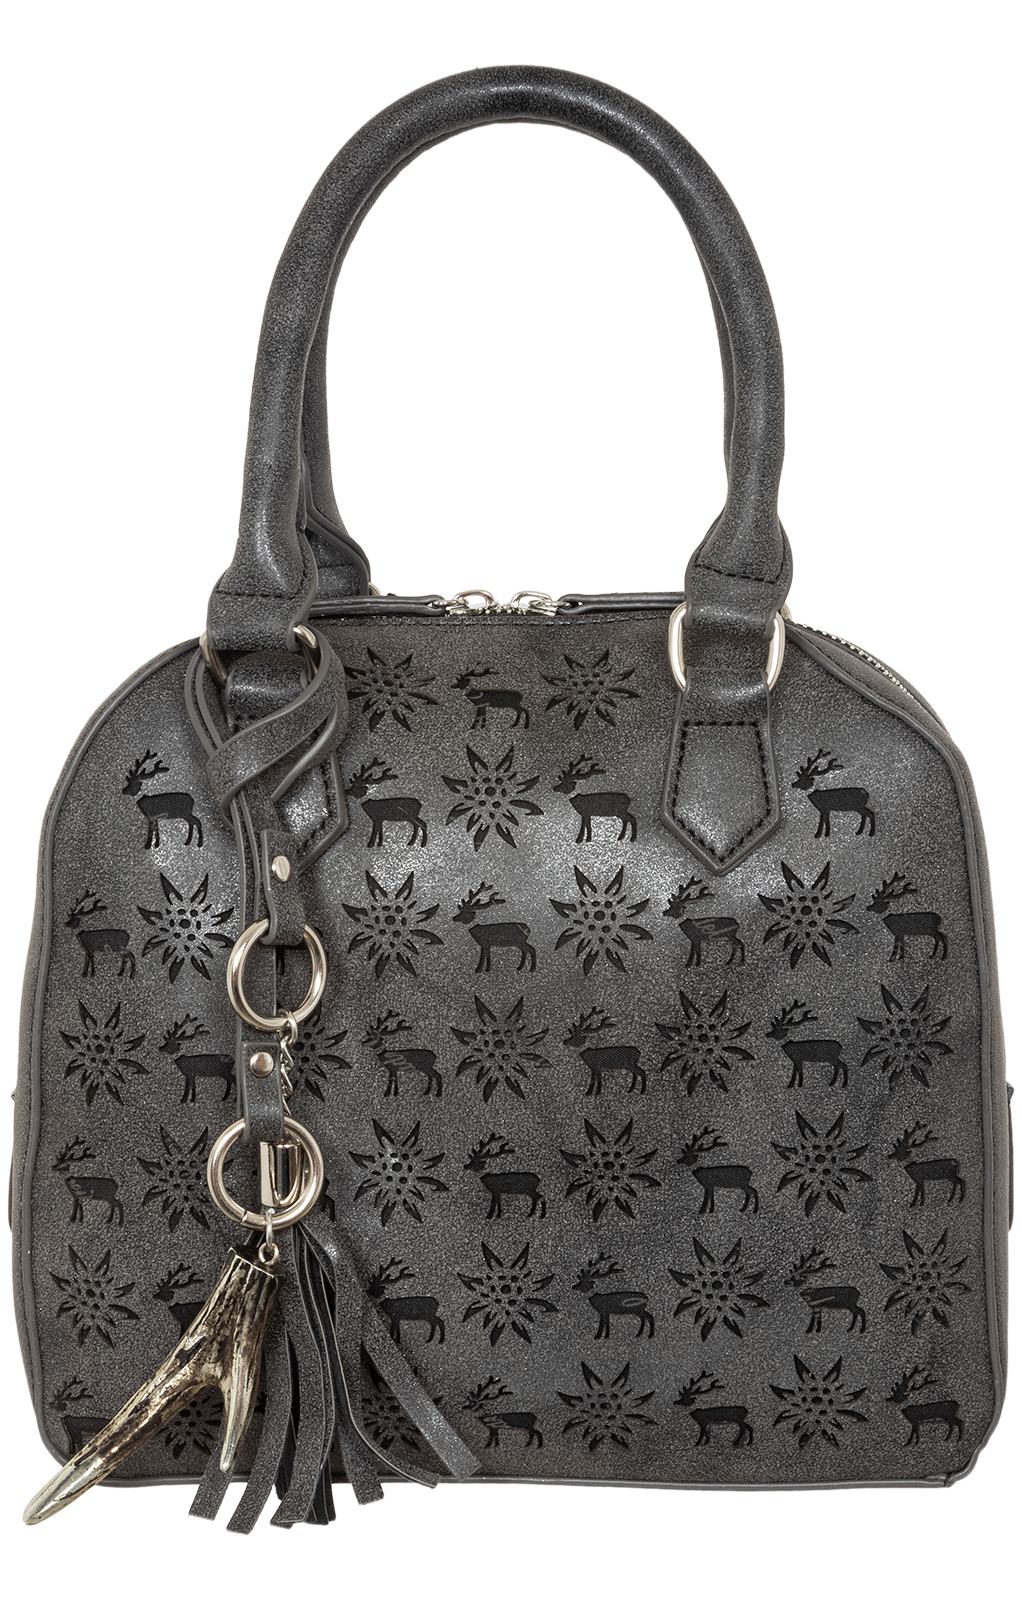 Trachtentasche 13200 antik schwarz von Lady Edelweiss